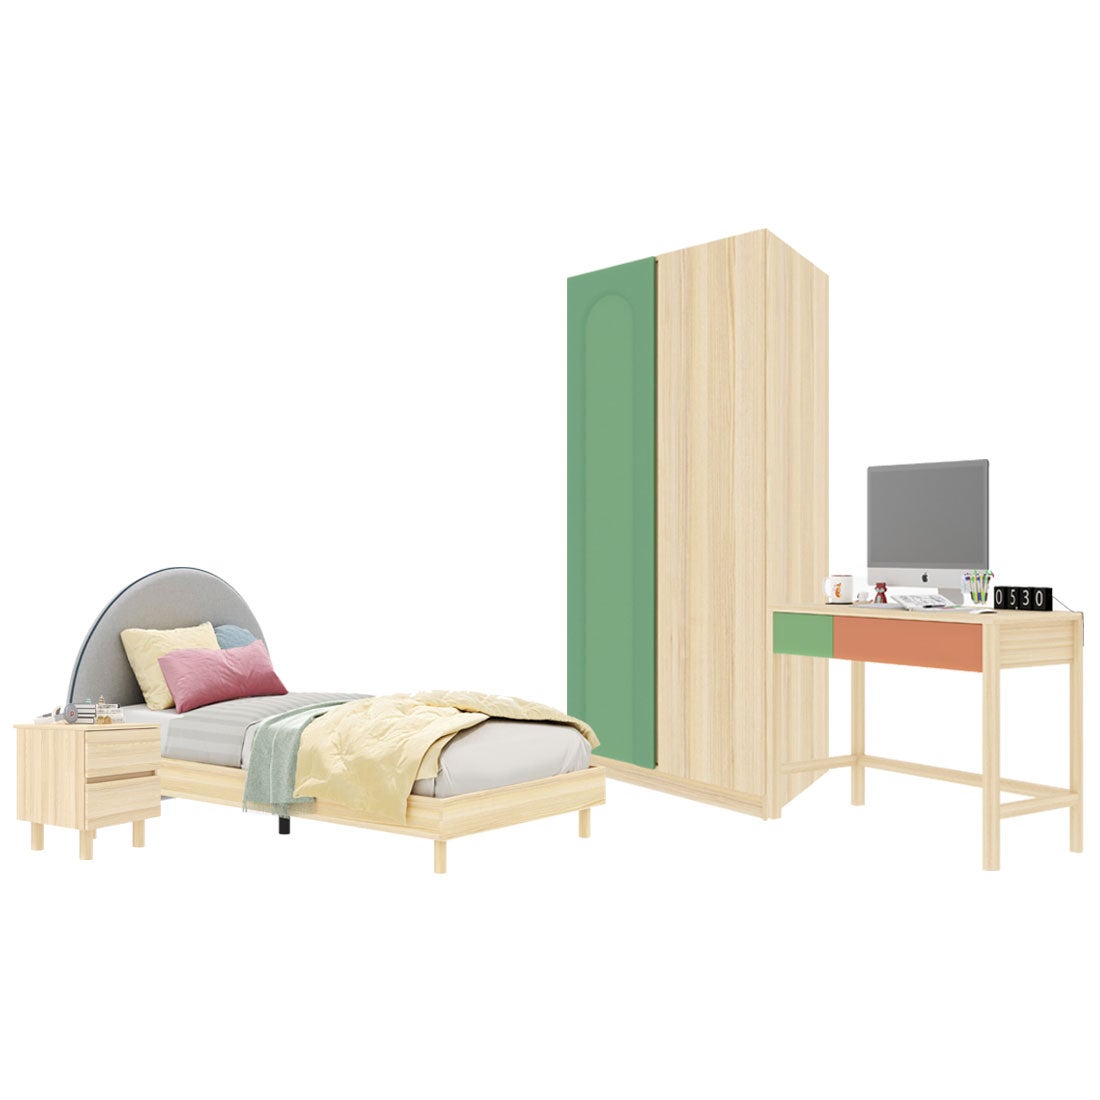 ชุดห้องนอน ขนาด 3.5 ฟุต-เบาะครีม รุ่น Bingsoo & ตู้เสื้อผ้า 90 ซม. พร้อมตู้ข้างเตียง สีเขียว01